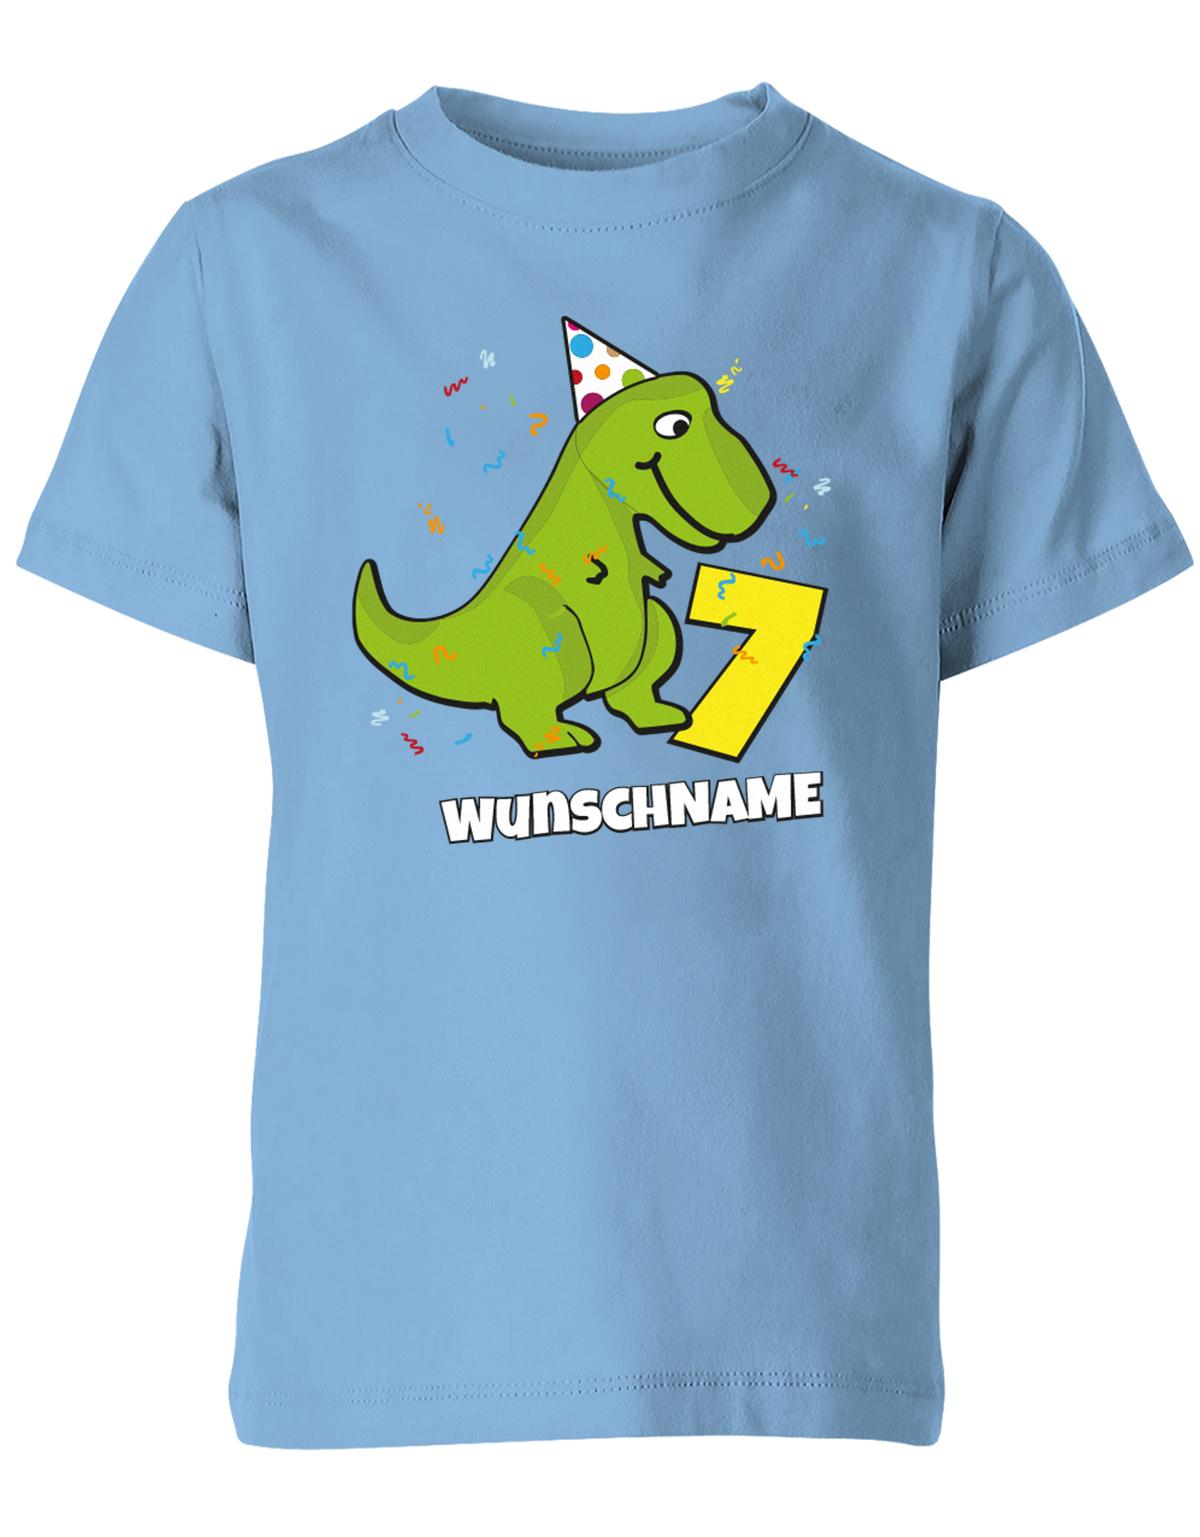 ich-bin-7-Dinosaurier-t-rex-wunschname-geburtstag-kinder-shirt-hellblau